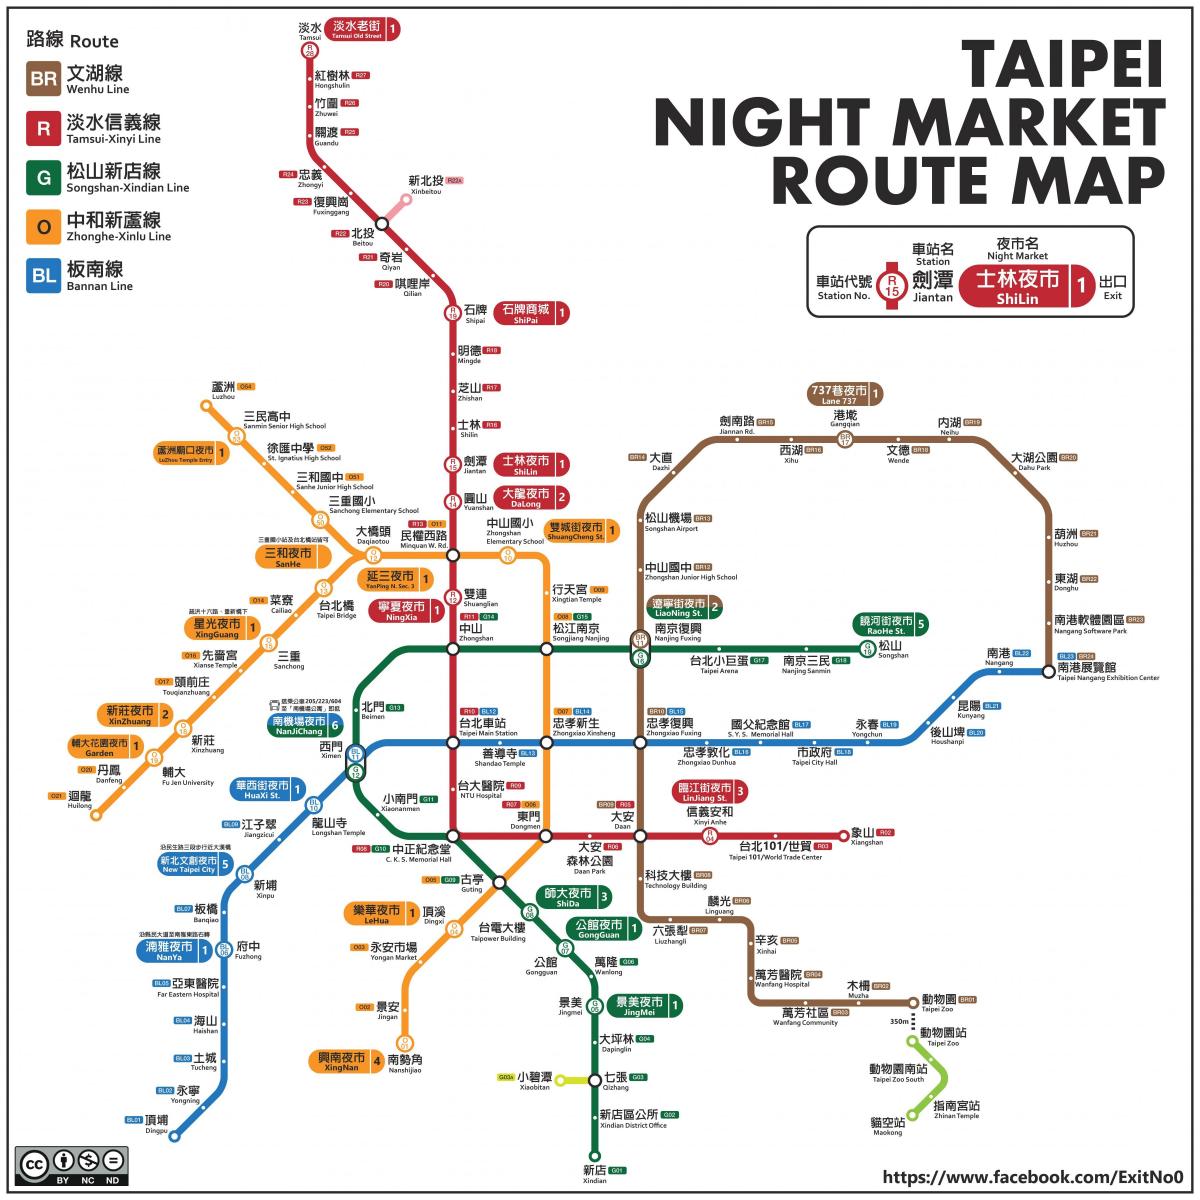 քարտեզ Տայպեյ գիշերային շուկա